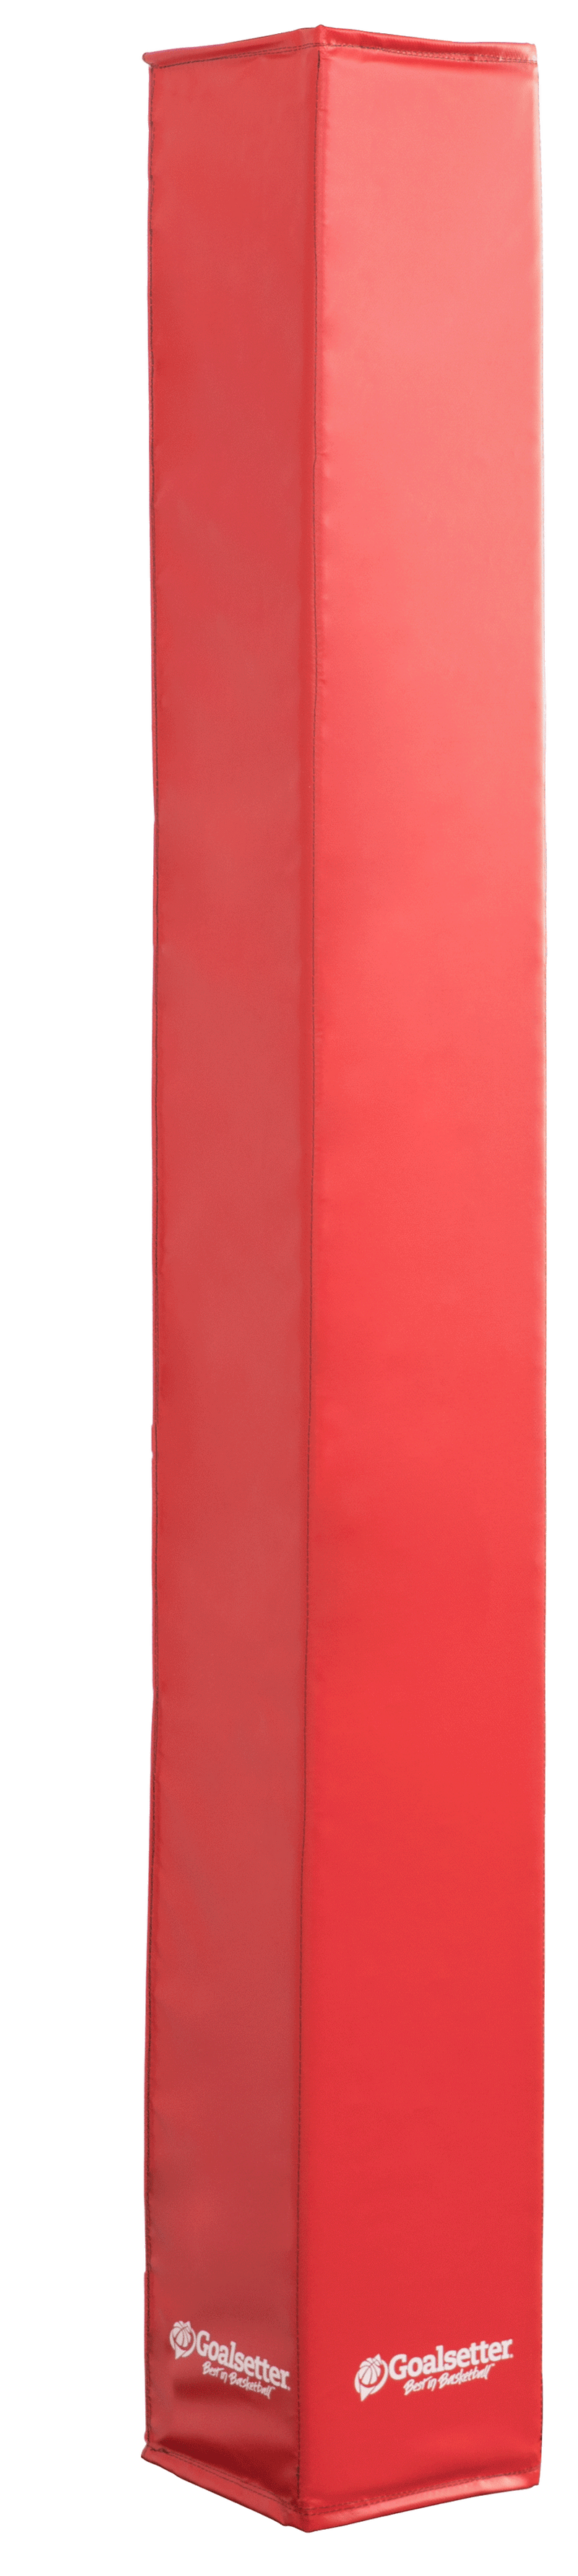 Goalsetter Basketball Custom Fit Pole Pad (5-6") - Red